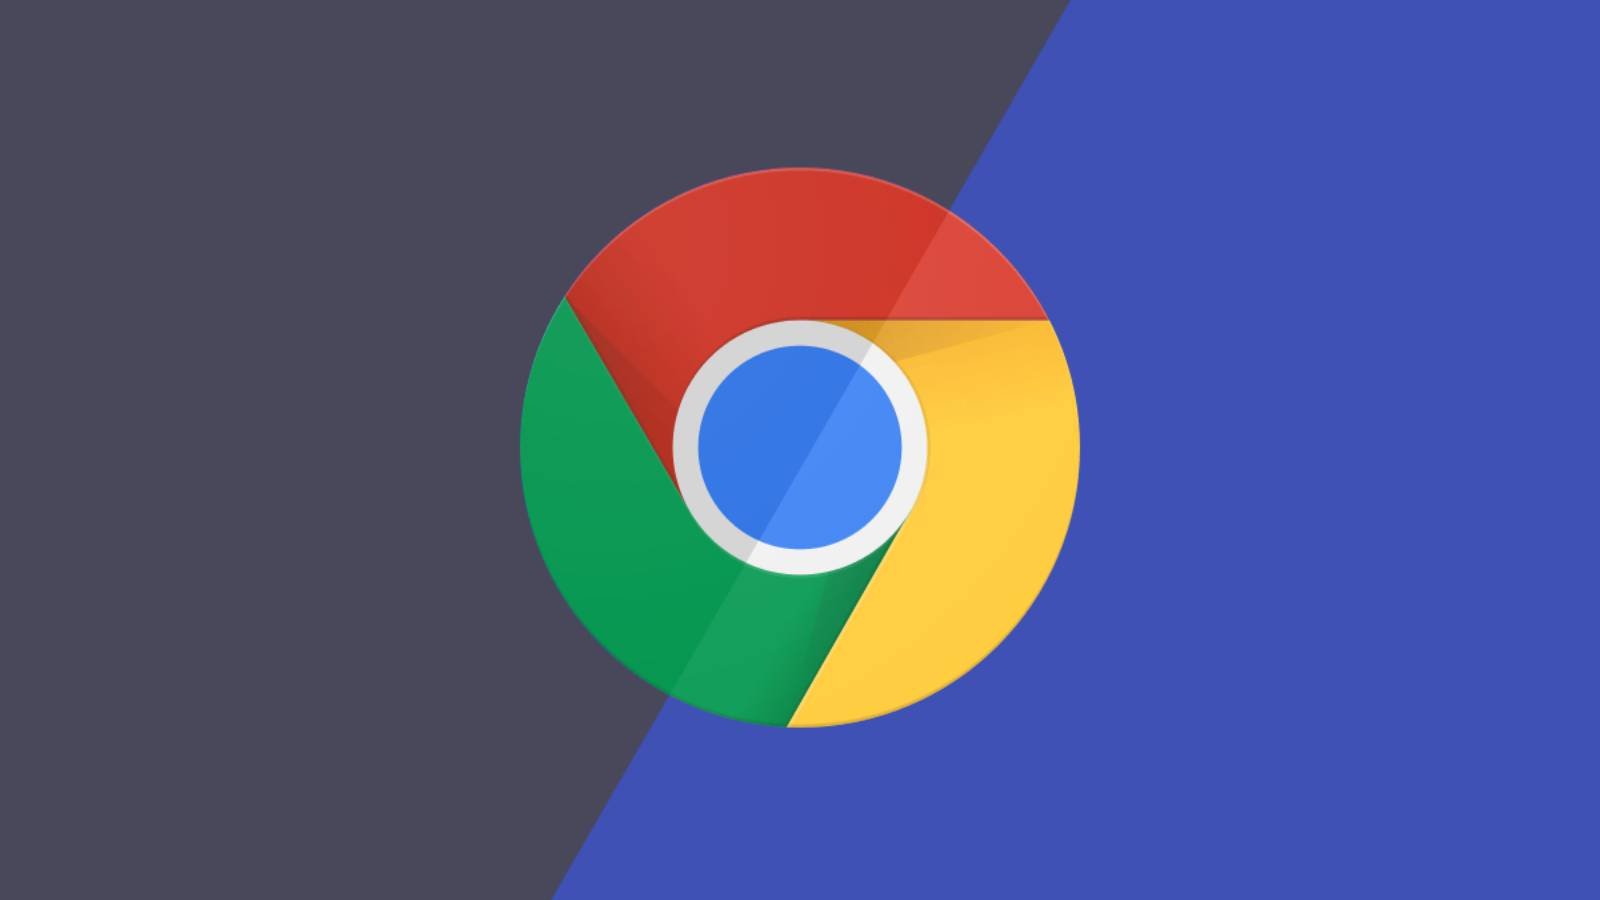 Adgangskodeadvarsel til Google Chrome